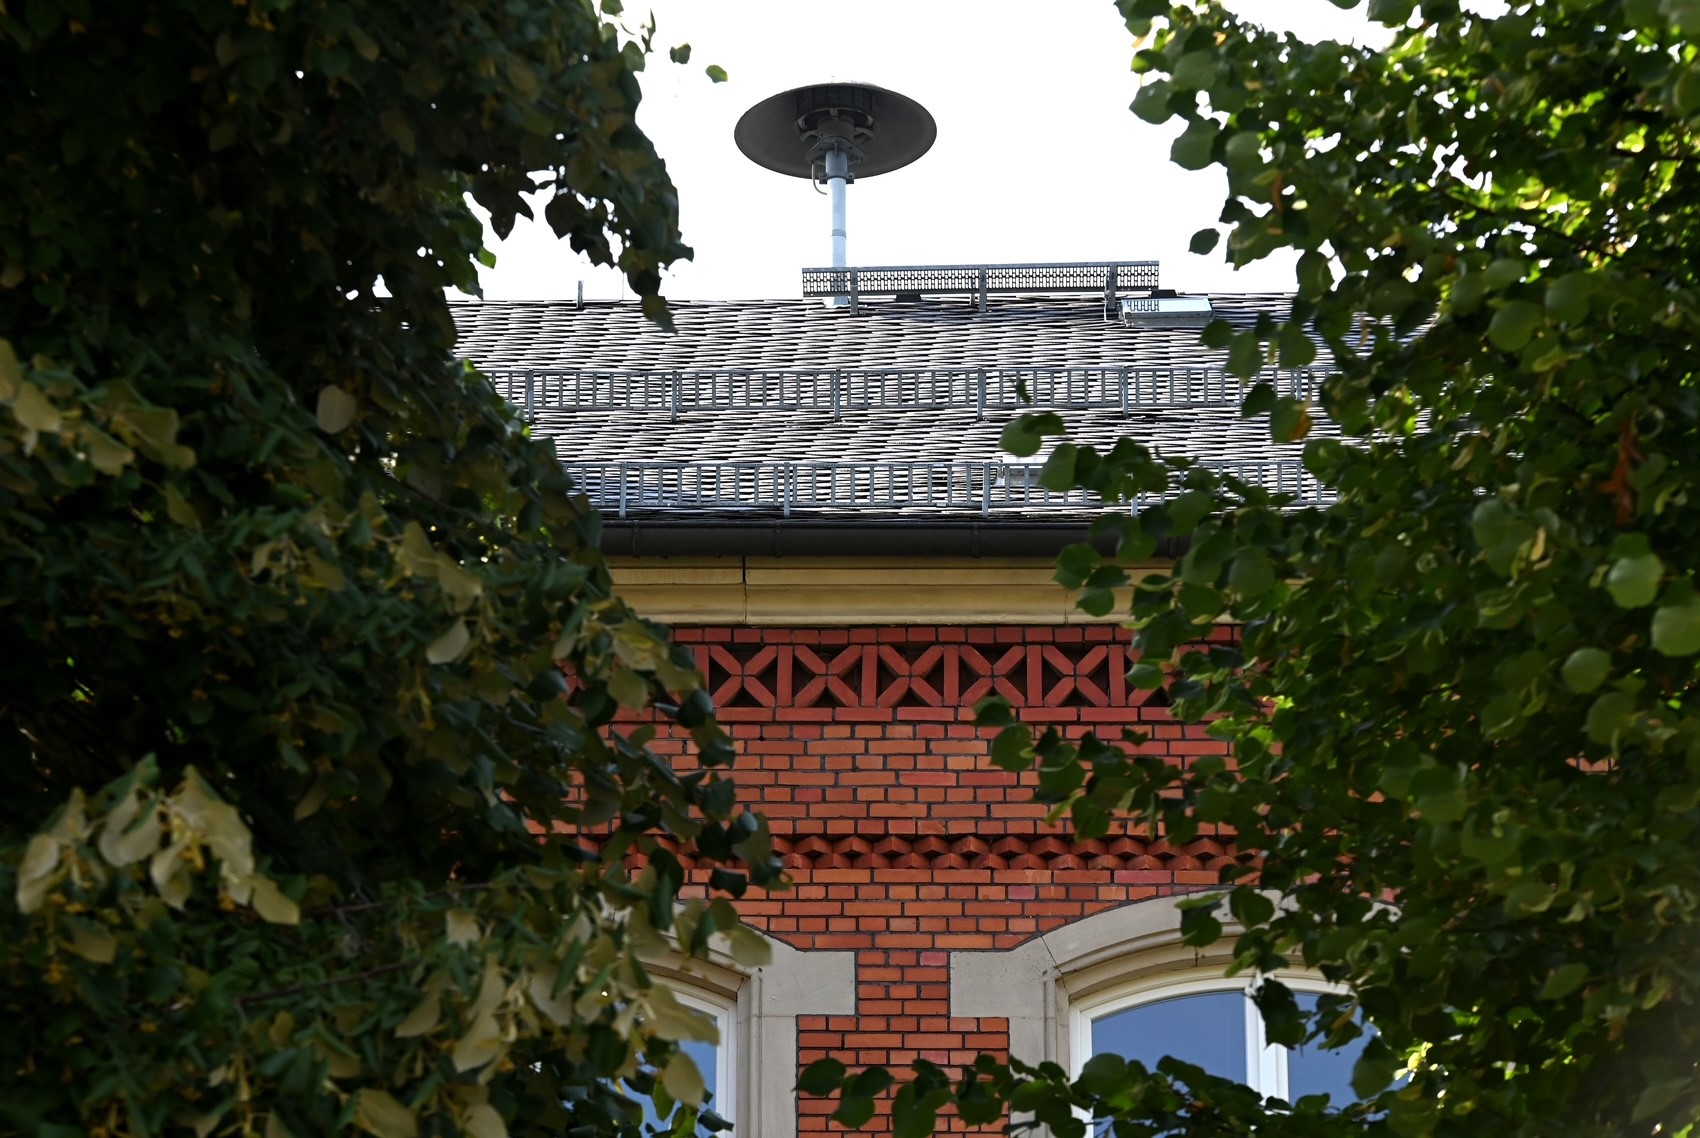 Eine Sirenenanlage auf dem Dach eines Gebäudes.